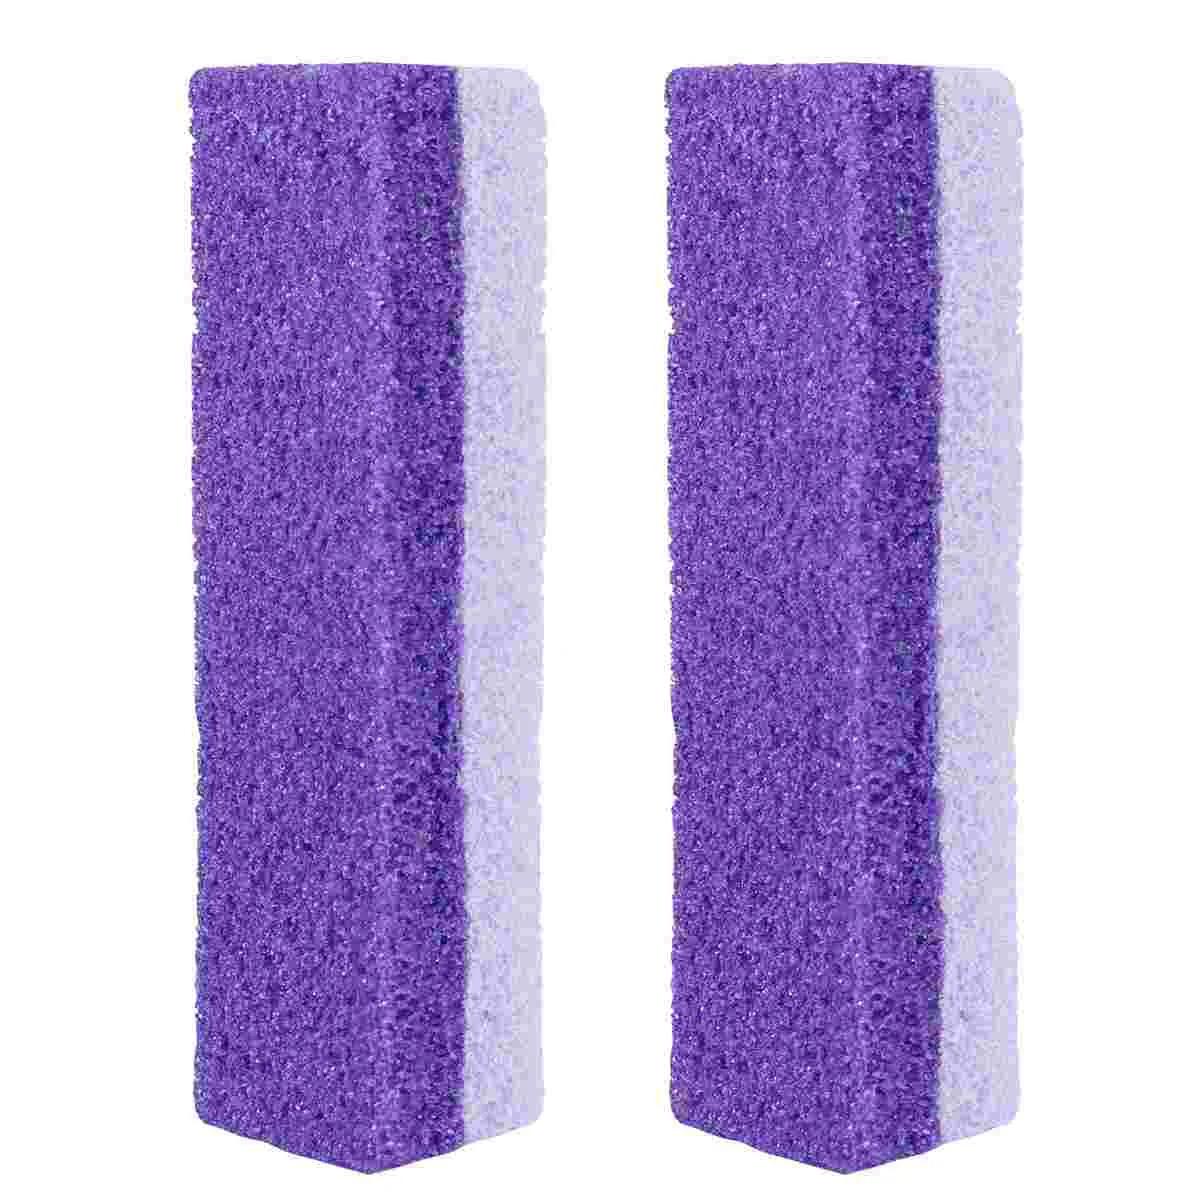 

Пемза-блок для ногтей, пемза-камень для туалета, аксессуары для ухода за ногтями, пемза-скраб, пемза-камень для использования